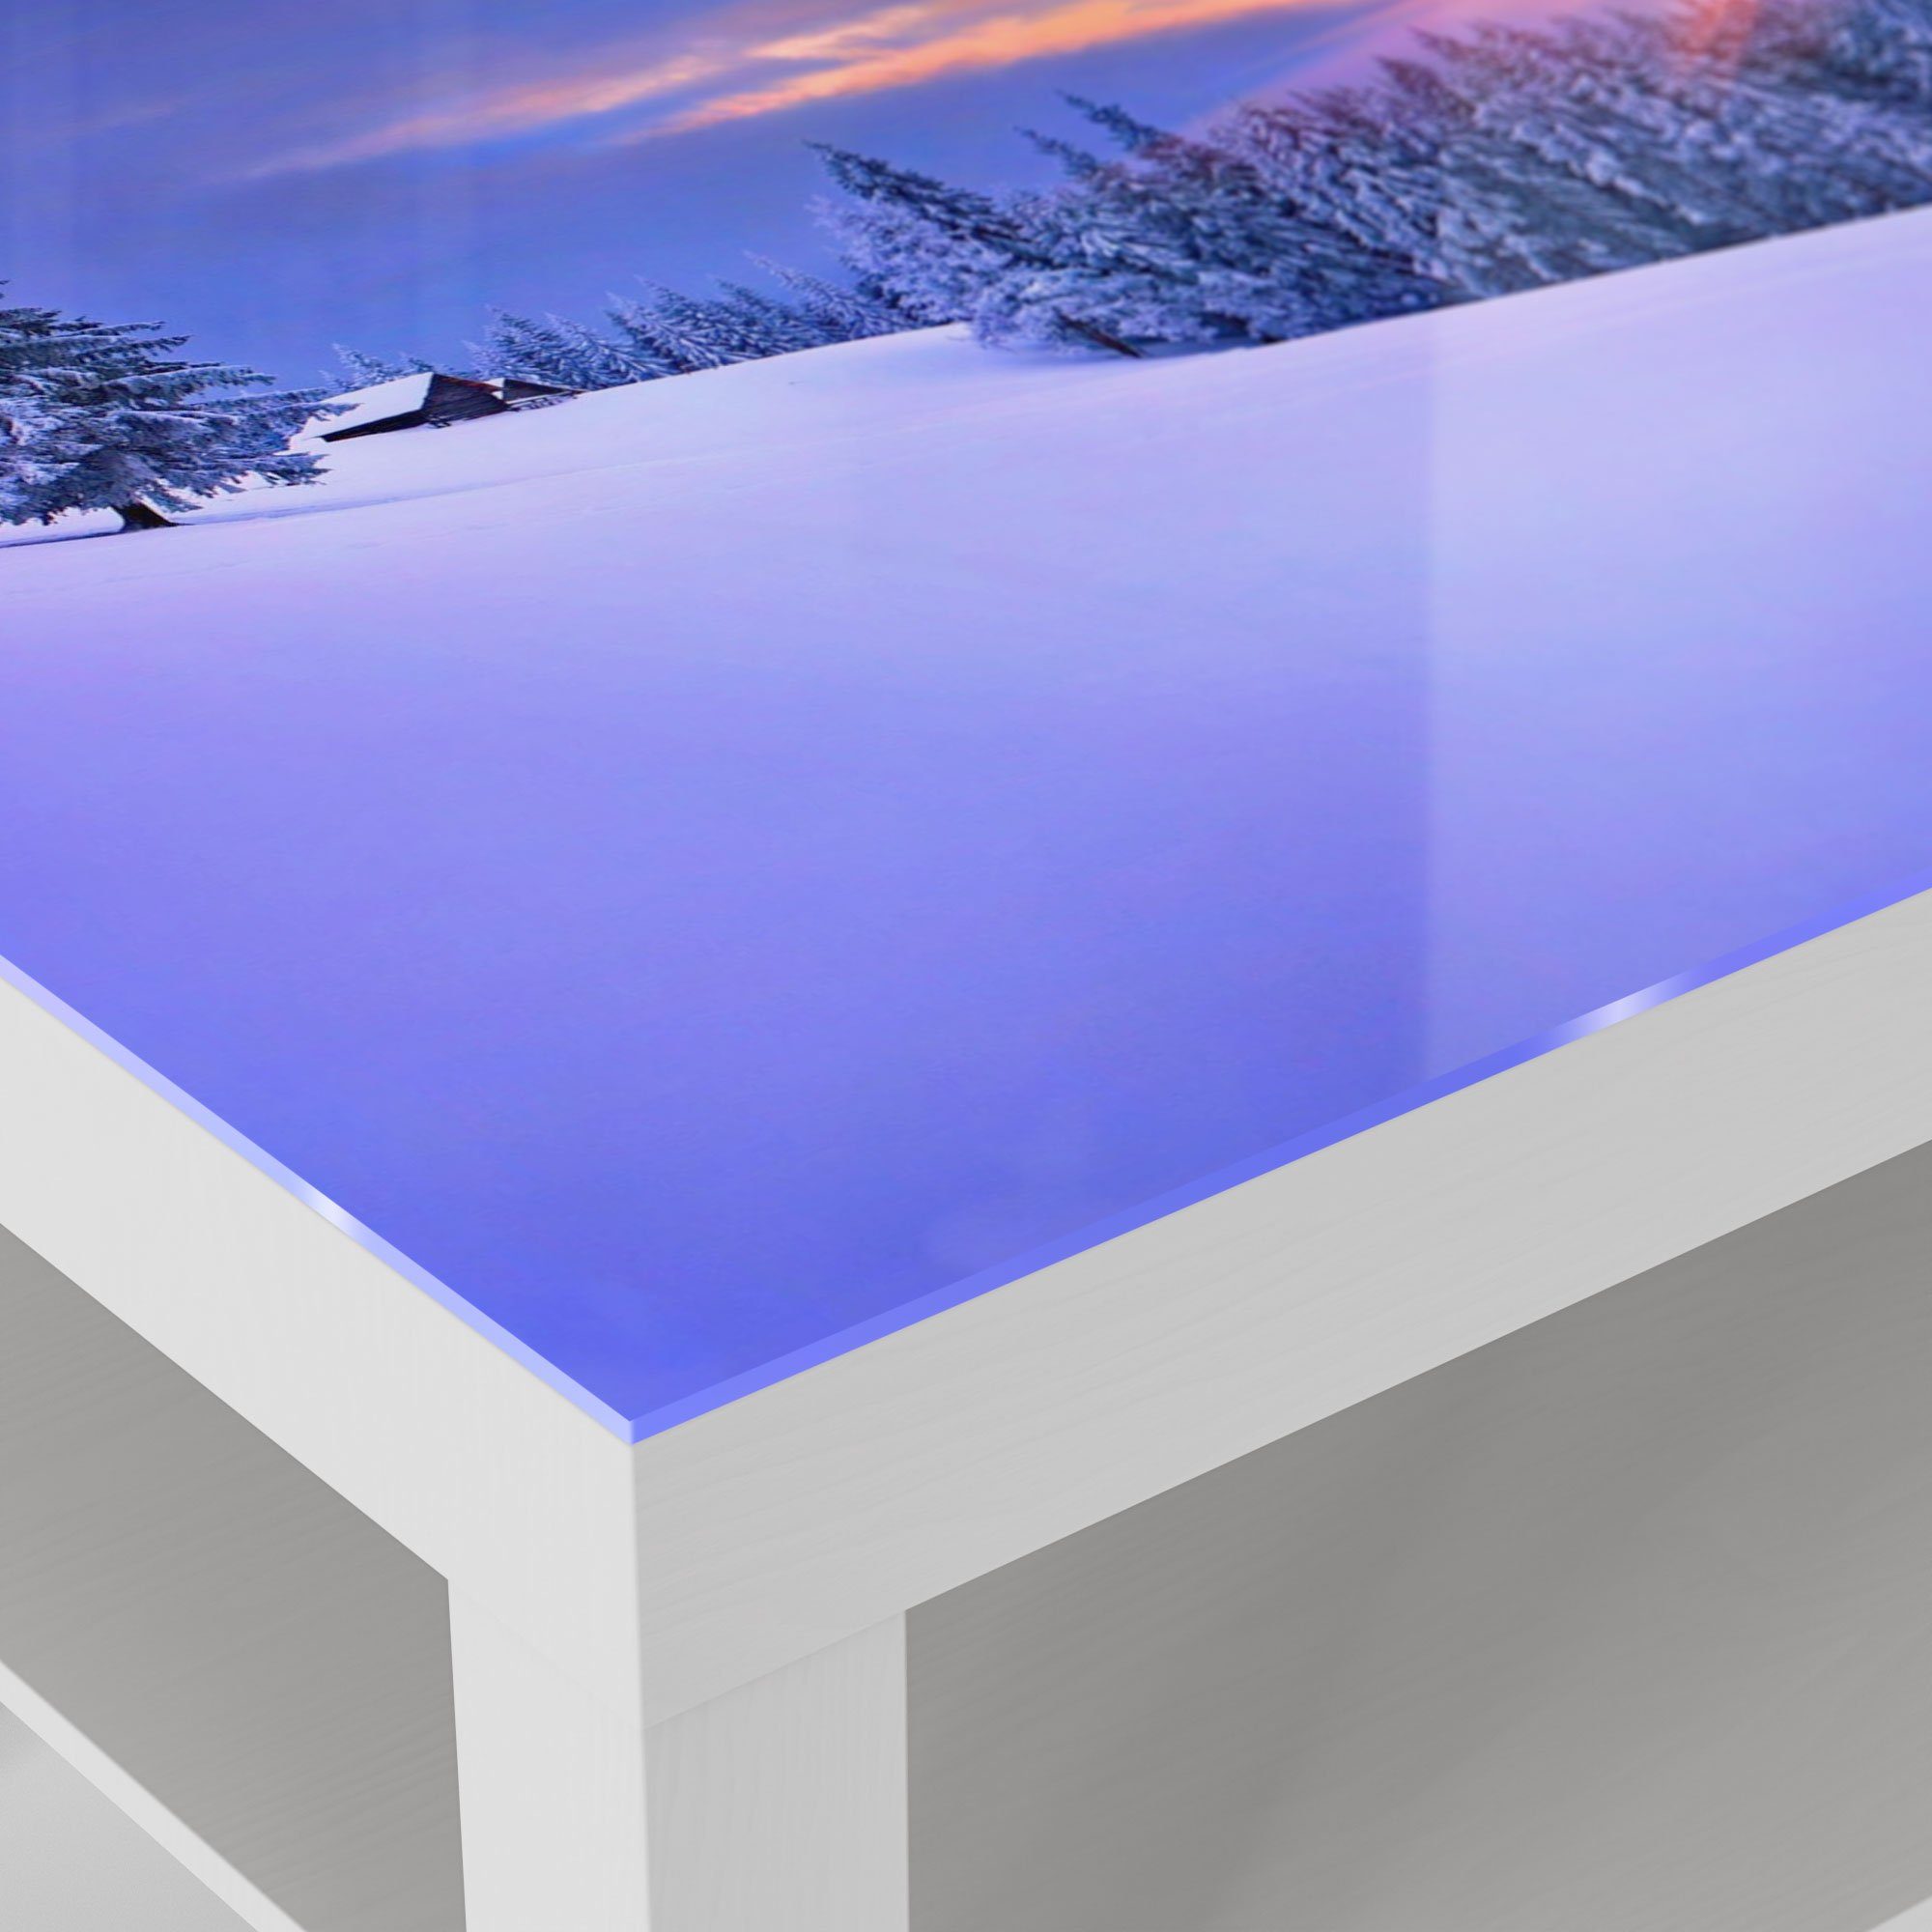 Glastisch Weiß DEQORI Beistelltisch modern 'Berg-Winterlandschaft', Glas Couchtisch